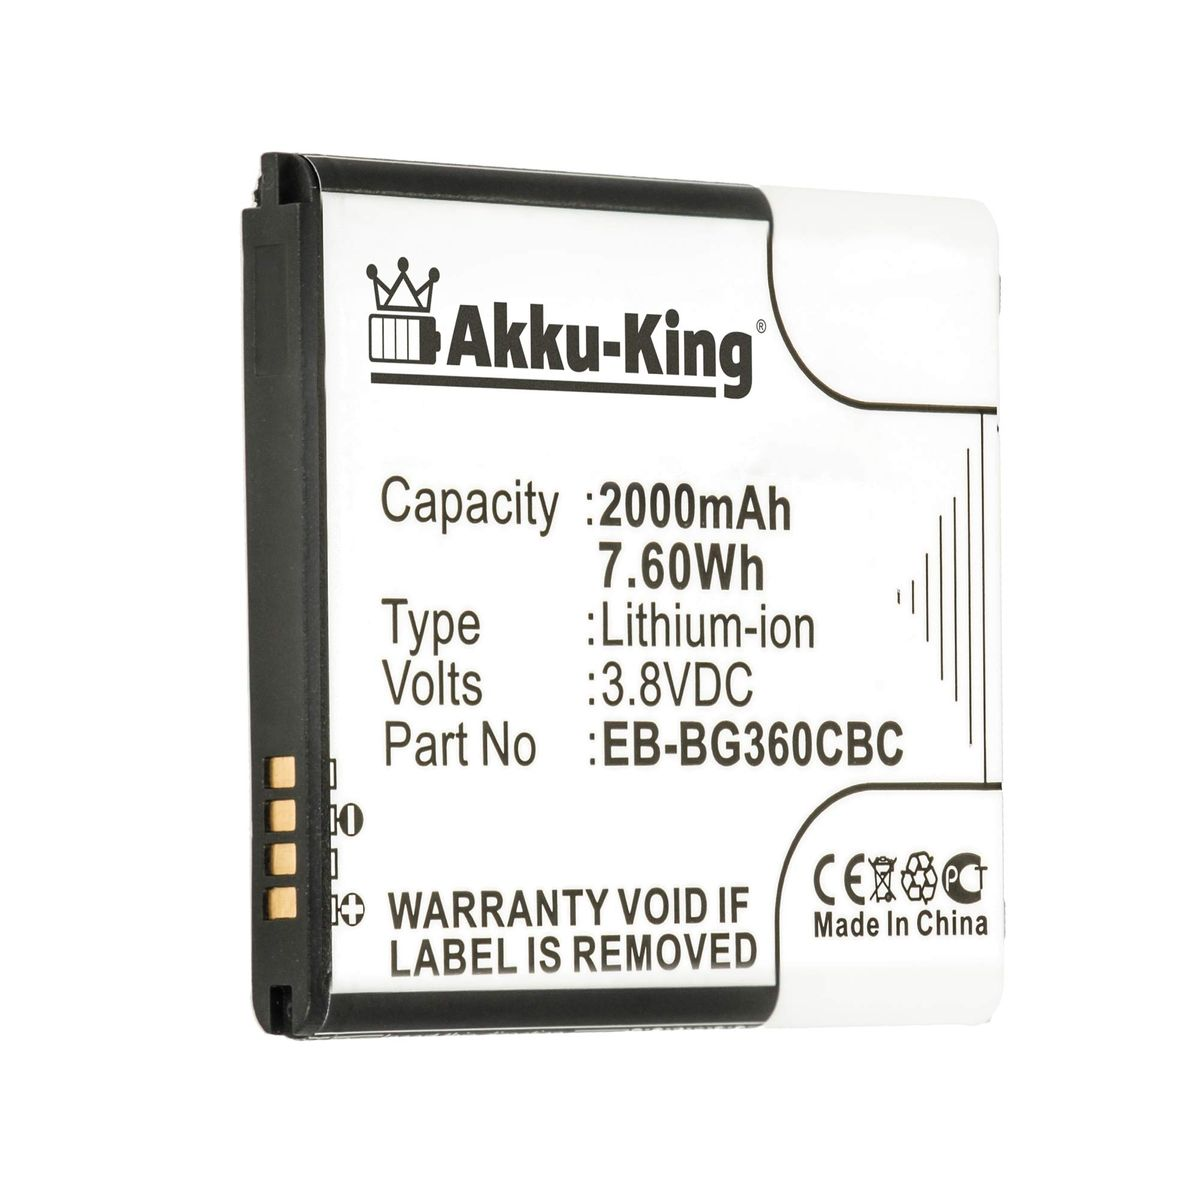 Samsung AKKU-KING 2000mAh Li-Ion Handy-Akku, EB-BG360BBE kompatibel 3.8 Akku Volt, mit